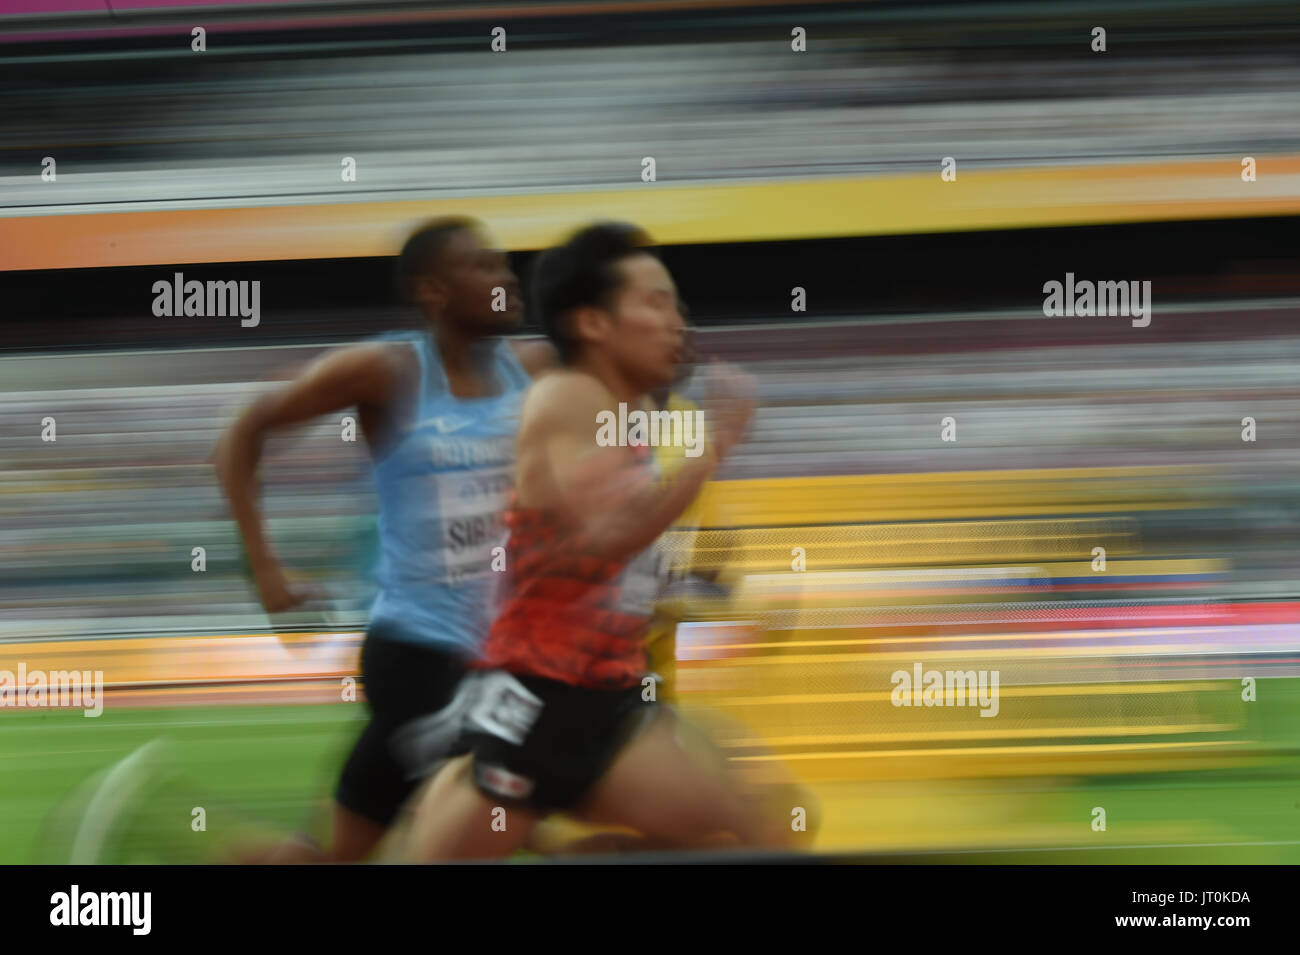 Karabo SIBANDA and Takamasa KITAGAWA, Japan,  400 meter preliminary round at London Stadium in London on August 5, 2017 at the 2017 IAAF World Championships athletics. Stock Photo